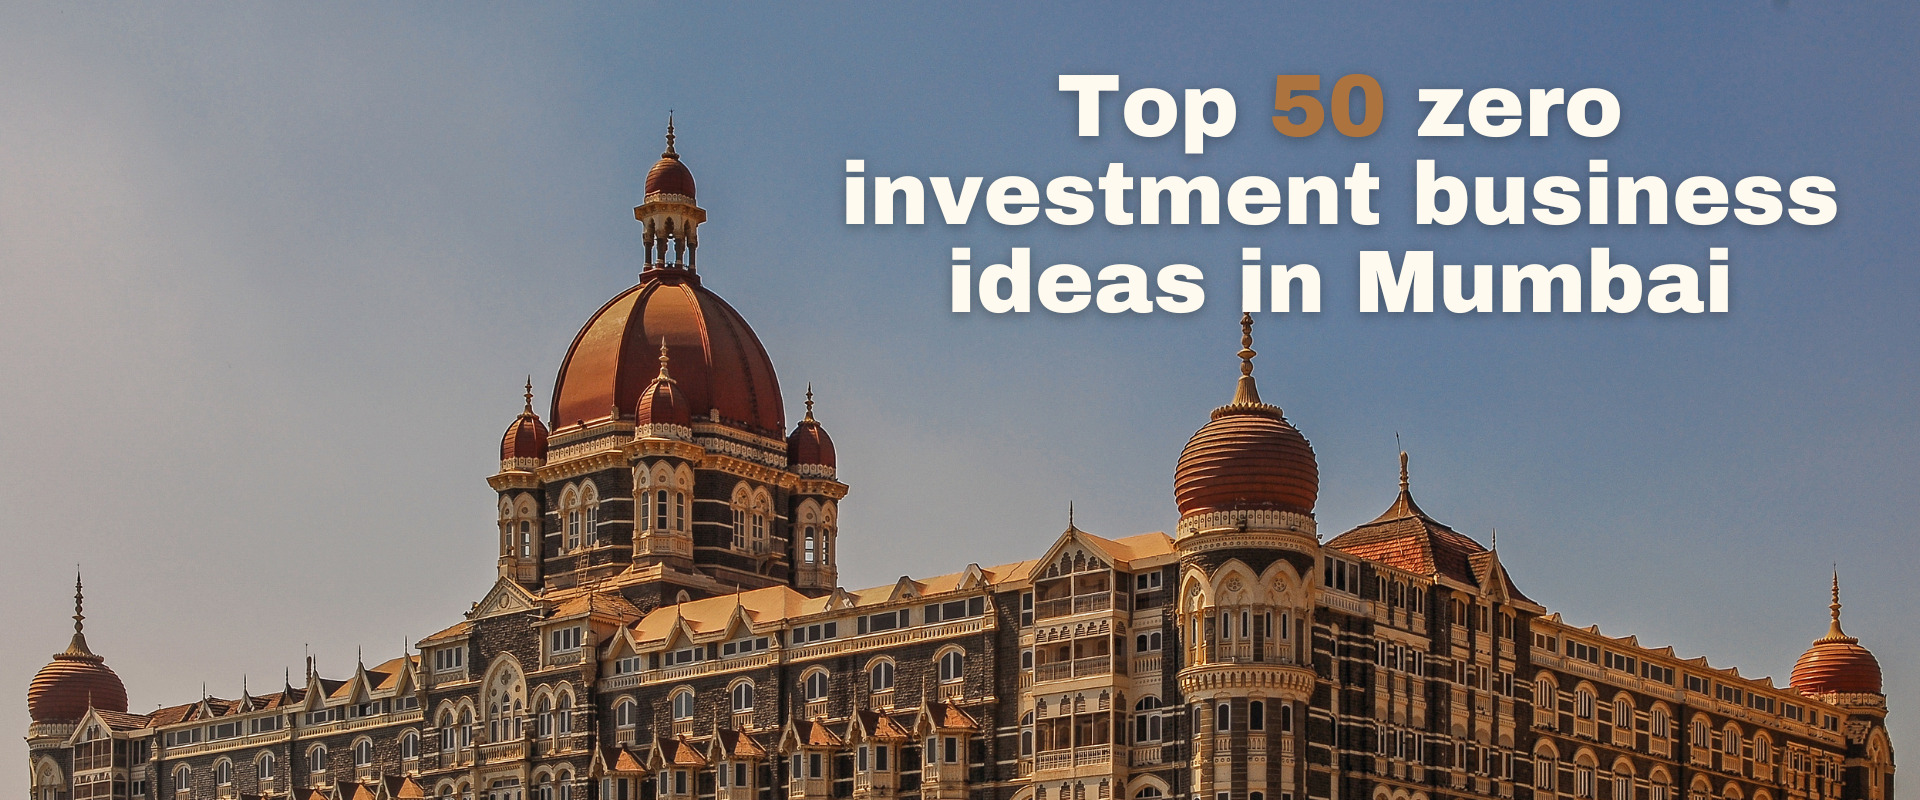 Top zero investment business ideas in Mumbai